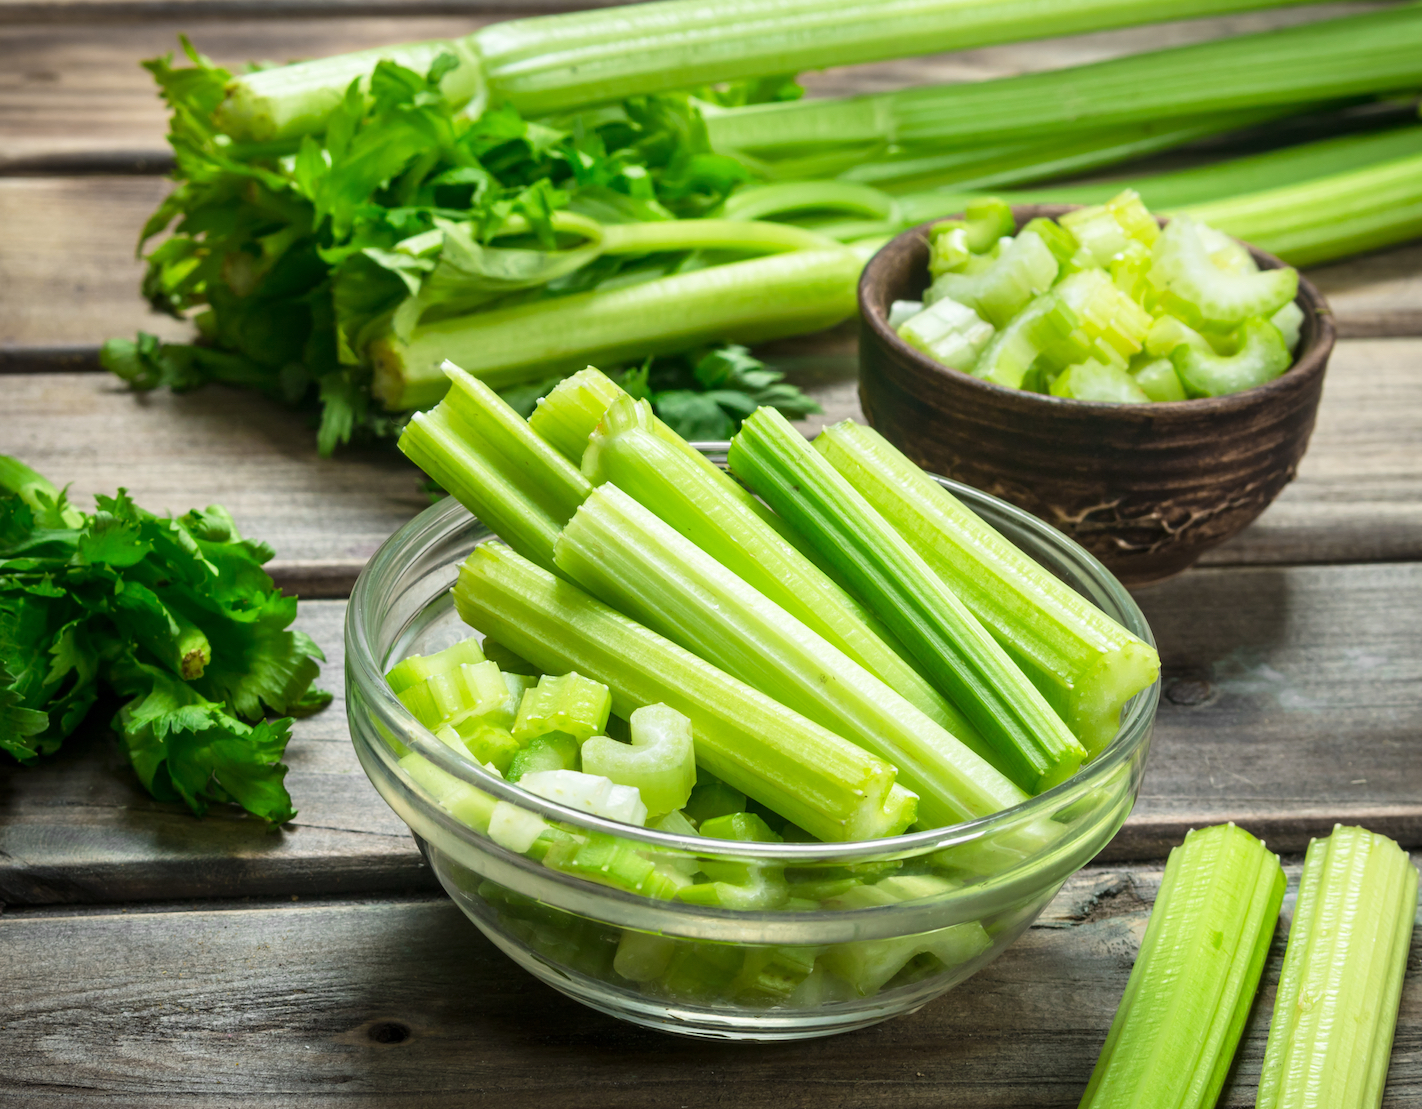 Best-foods-for-cancer-prevention:-Celery